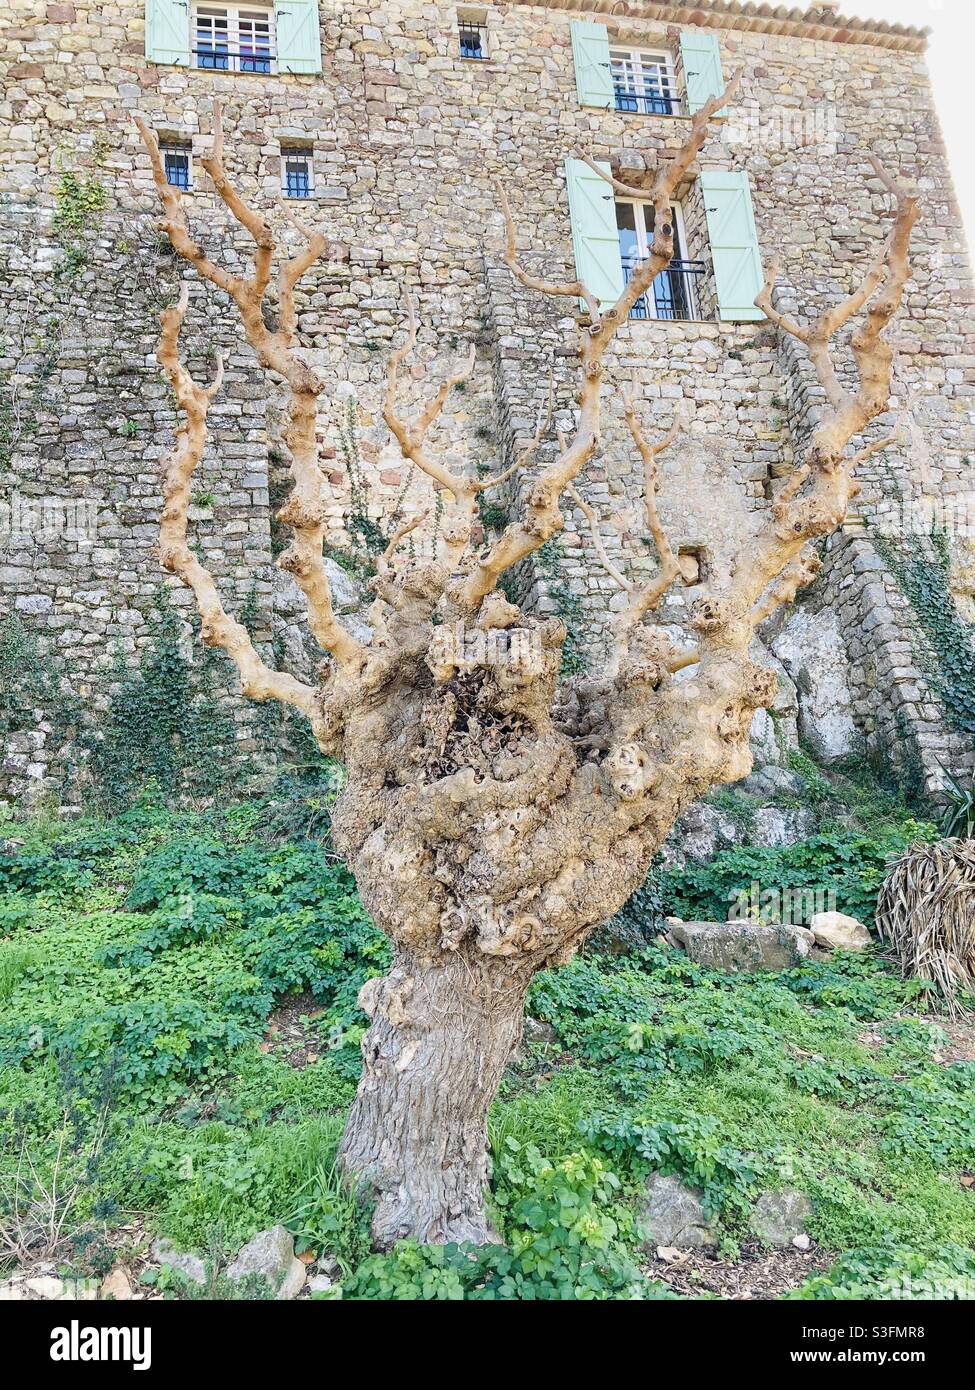 CET arbre aux branches et tronc étranges qui lui donne une forme bossu et vieux avec en fond un Grand mur de Pierre . Jolie vue d’un vieux Village varois . Maggio 2021 Foto Stock